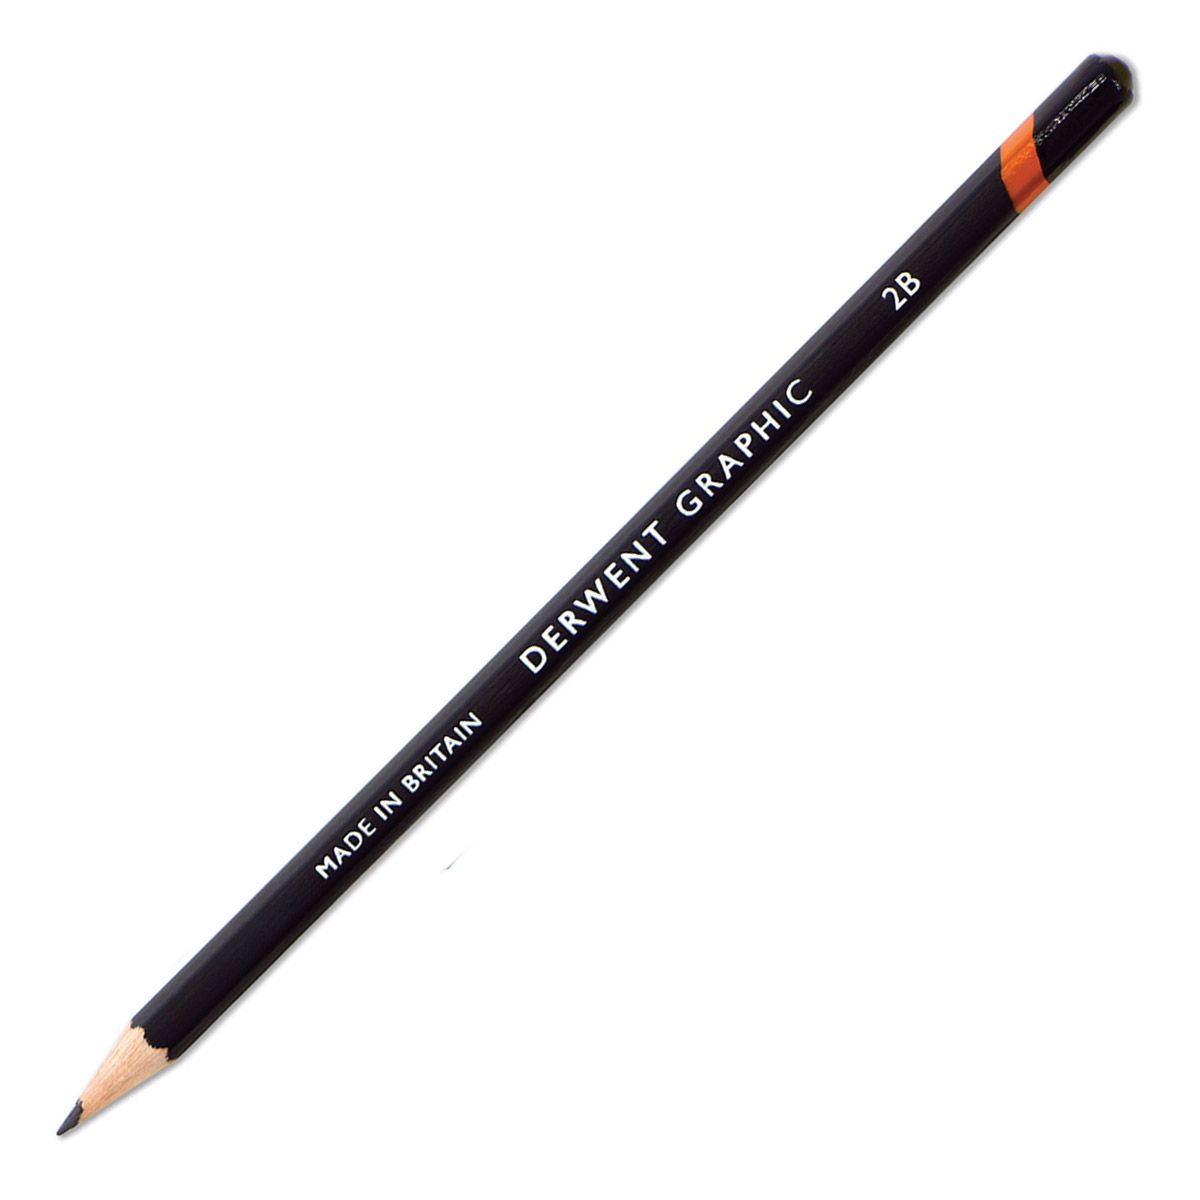 Derwent Graphic Pencil - 2B